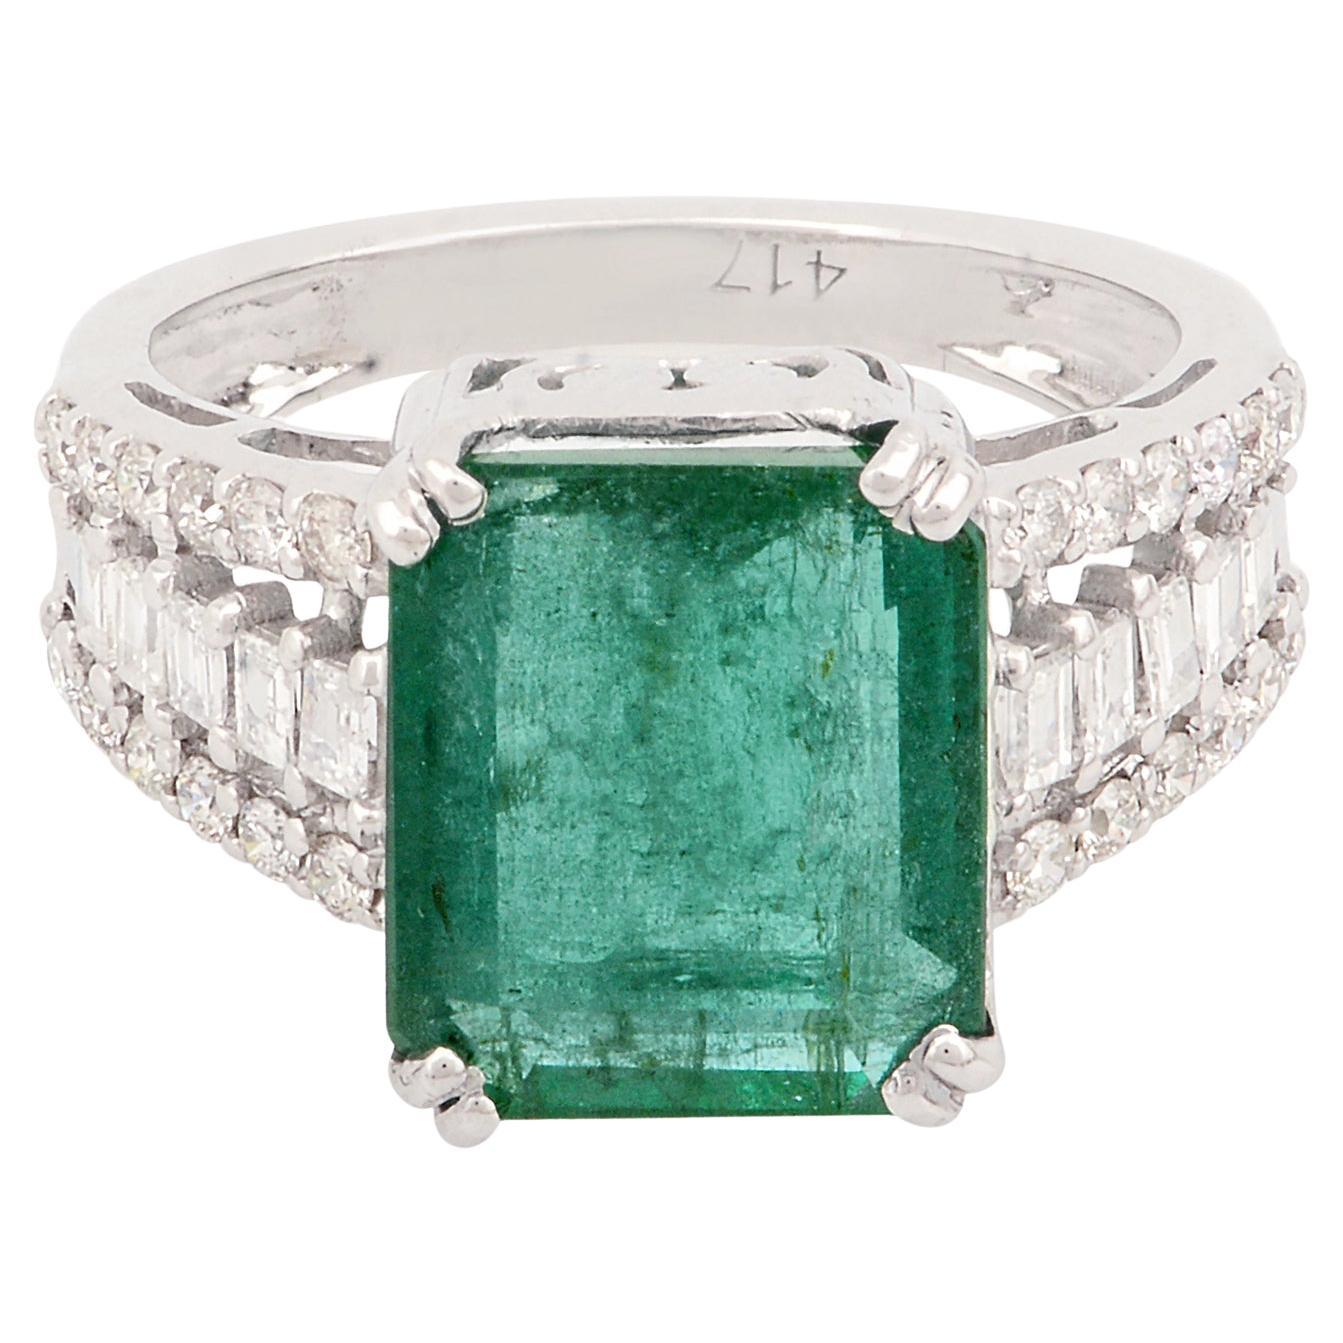 Natural Emerald Gemstone Ring Diamond 10 Karat White Gold Handmade Fine Jewelry